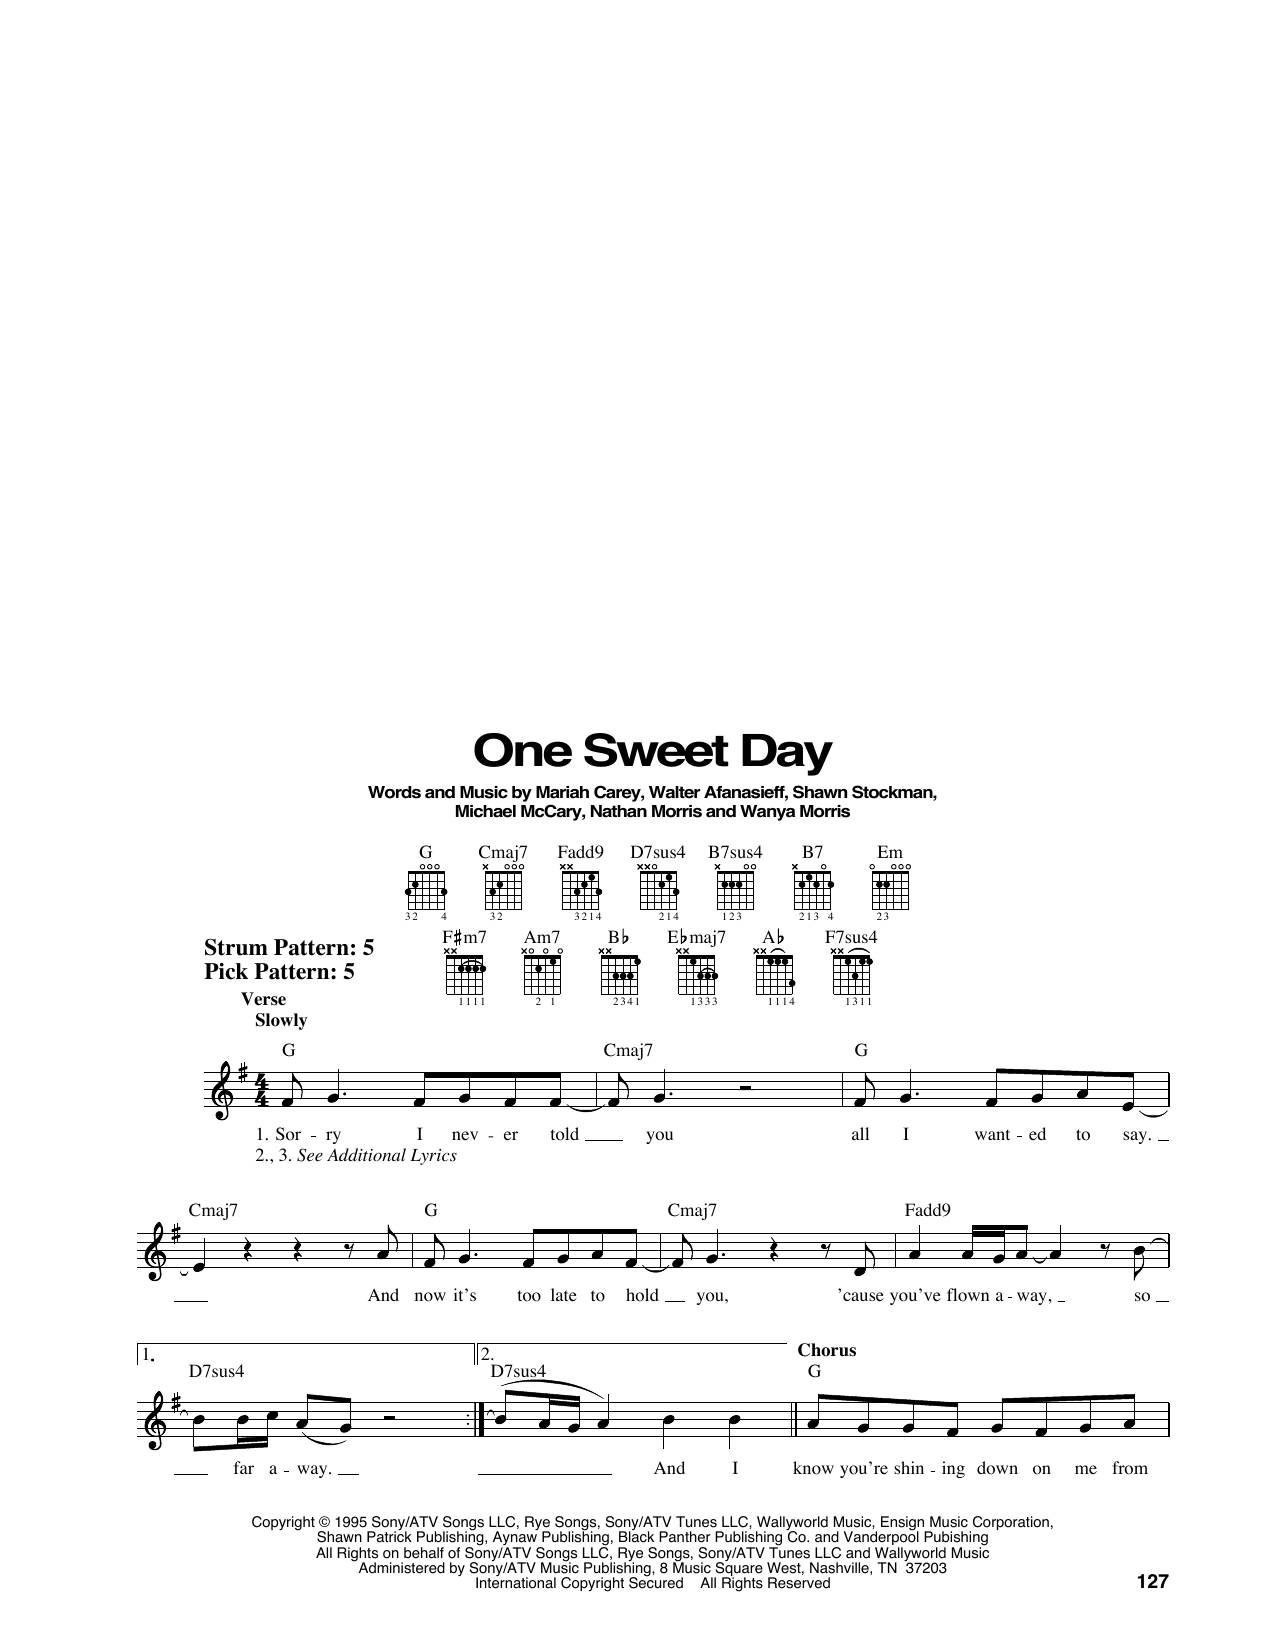 Download Mariah Carey and Boyz II Men One Sweet Day Sheet Music